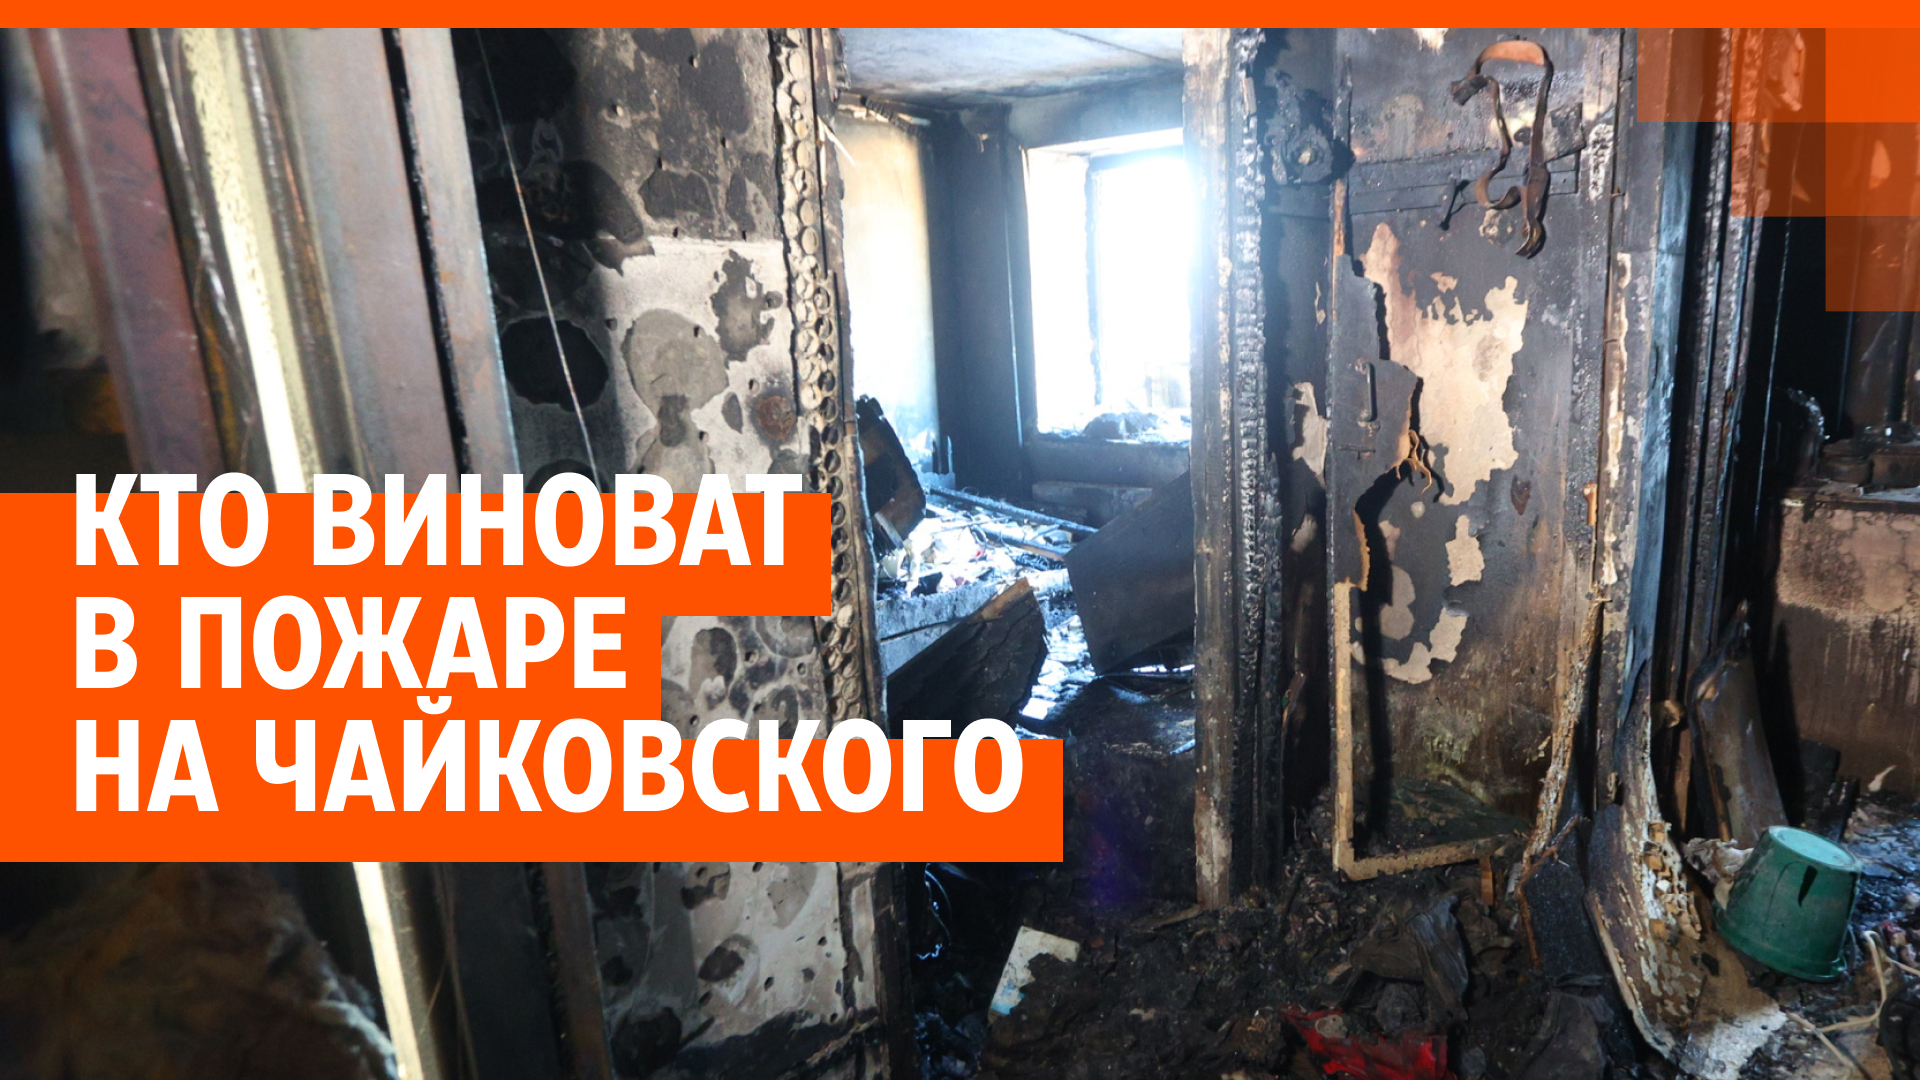 В гибели двух женщин во время пожара на Чайковского обвинили соседа-пьяницу